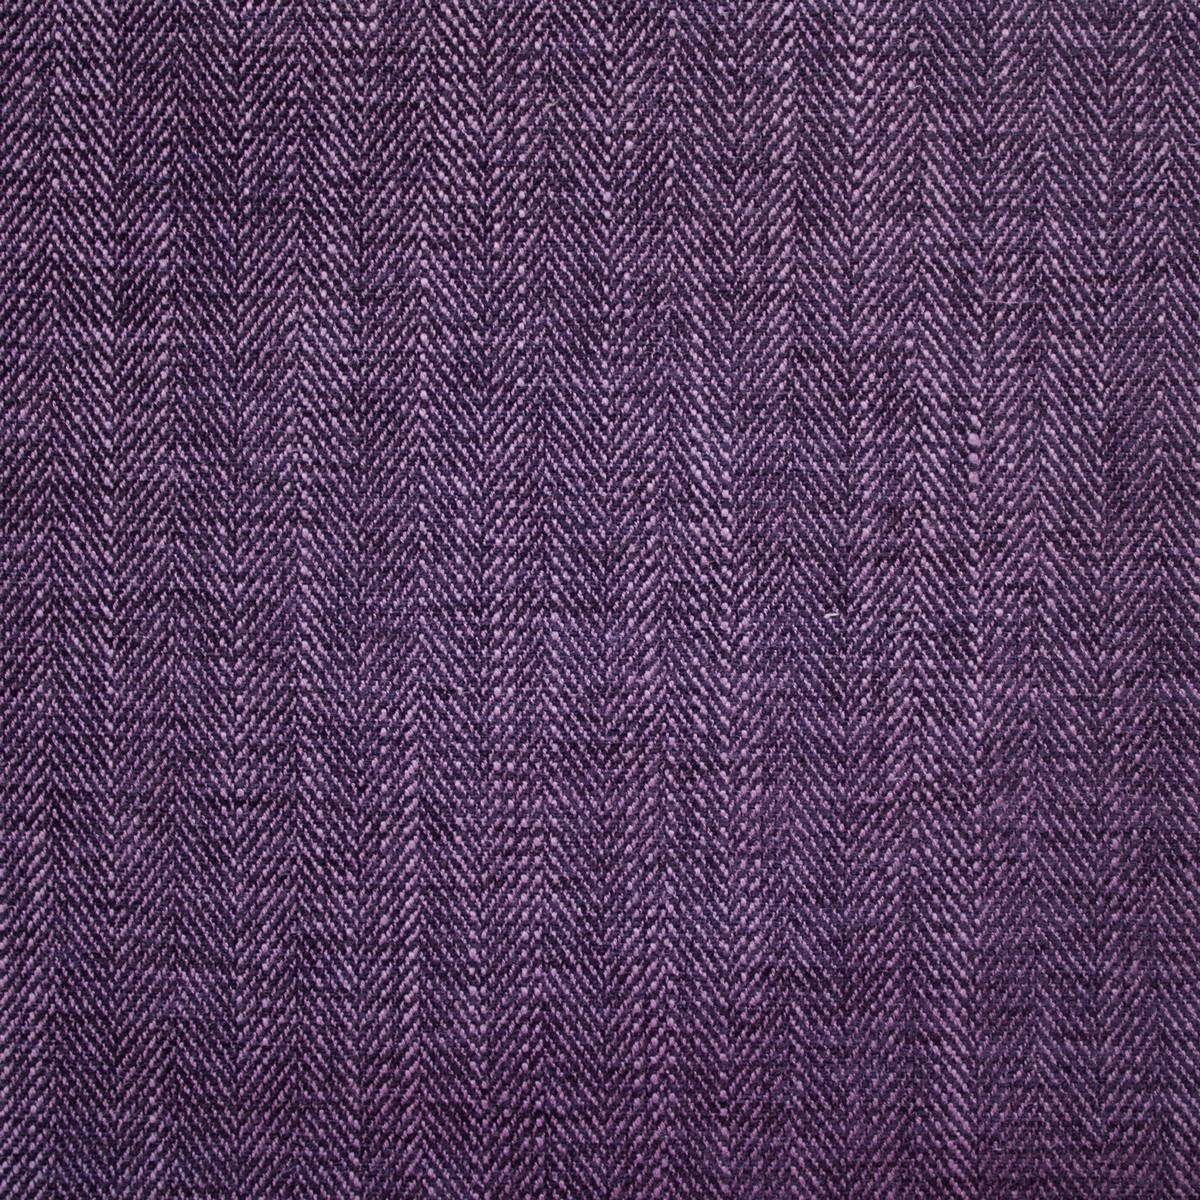 Morgan Plum Fabric by Ashley Wilde